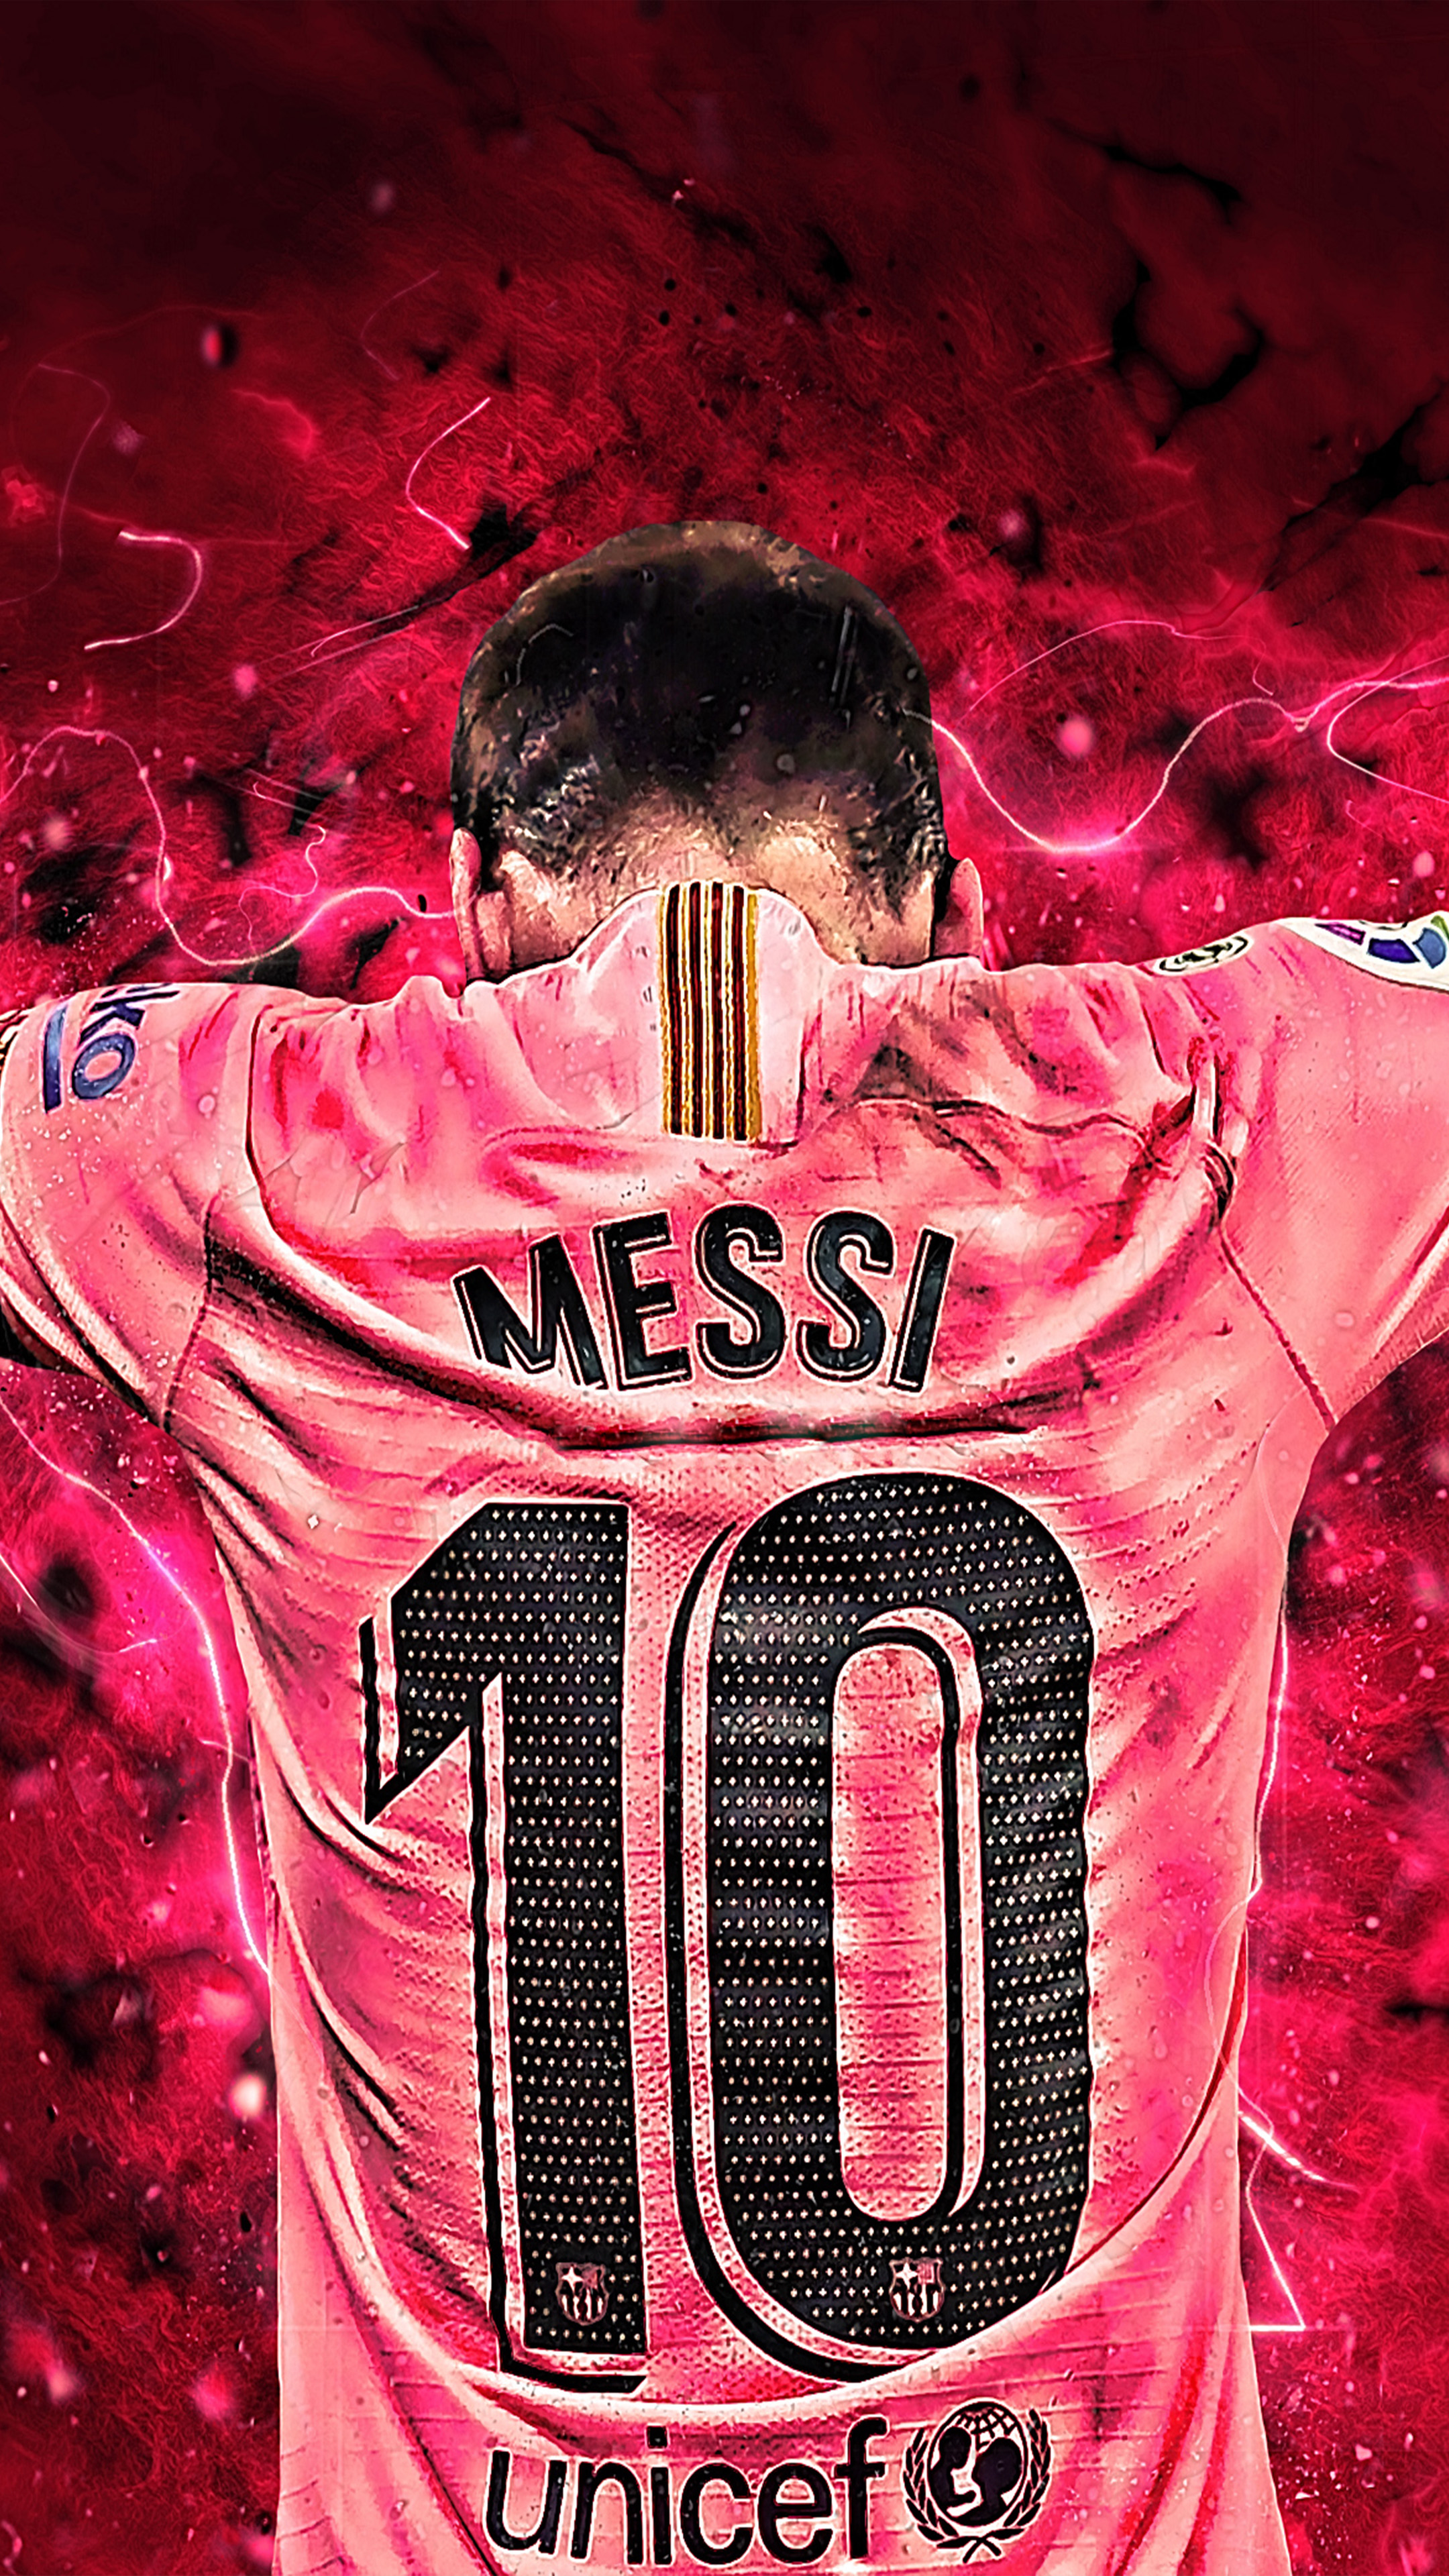 Bạn là fan hâm mộ của Lionel Messi? Hình nền với chất lượng 4K Ultra HD trên di động sẽ đem tới cho bạn một trải nghiệm tuyệt vời. Hãy tải và cập nhật ngay bức tranh điện tử với hình ảnh tuyệt đẹp của Messi để thể hiện đam mê bạn dành cho một trong những cầu thủ xuất sắc nhất thế giới này nhé.